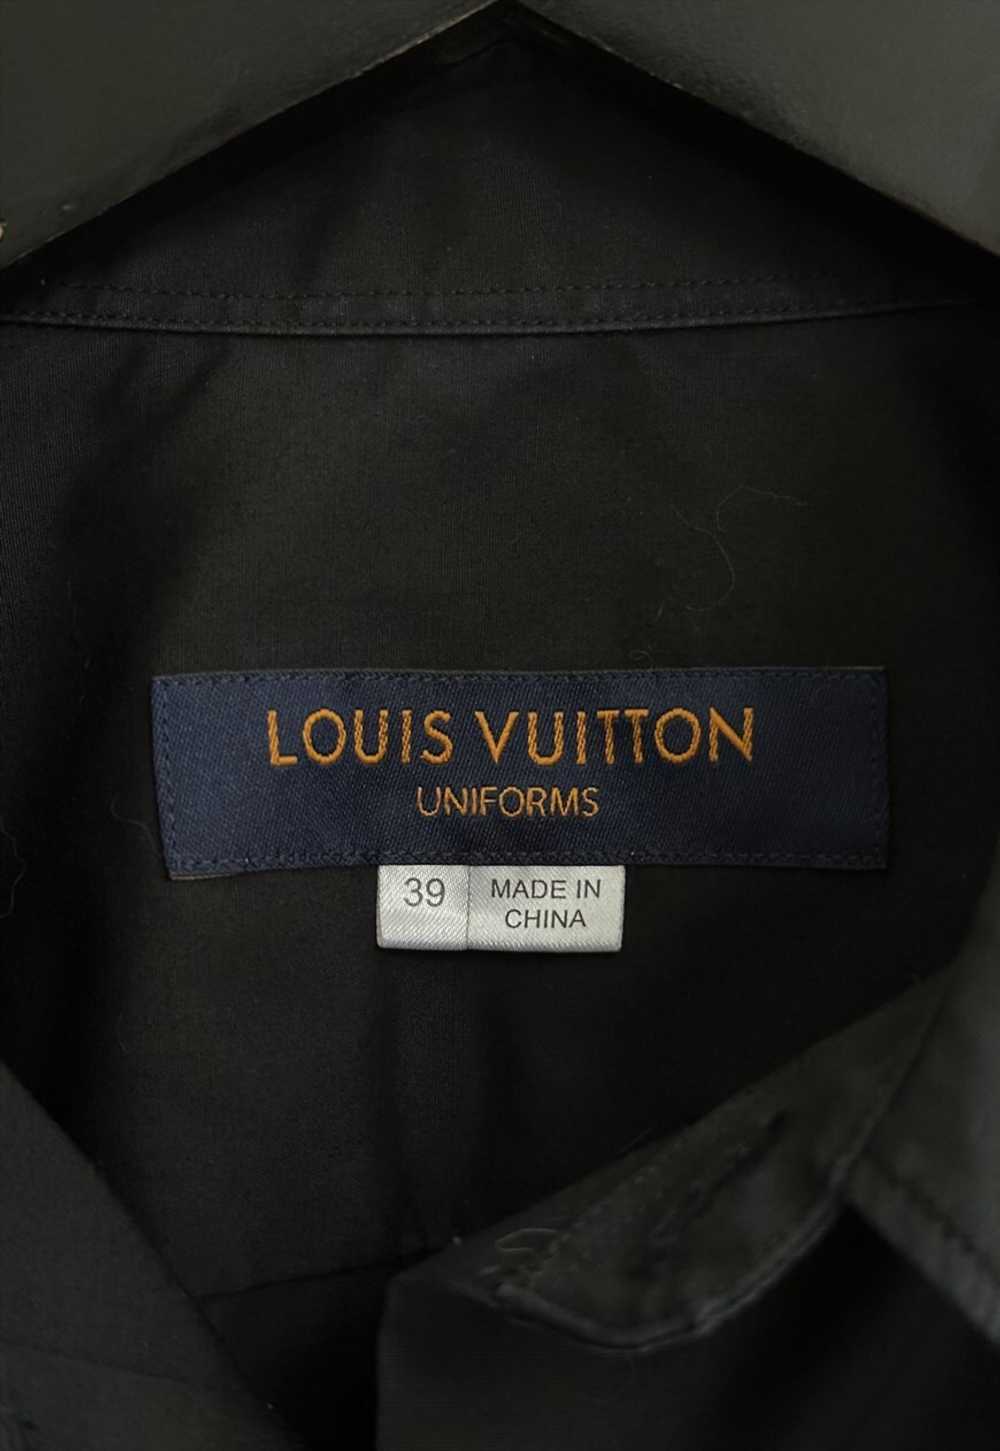 Louis Vuitton Uniforms Black Shirt - image 4